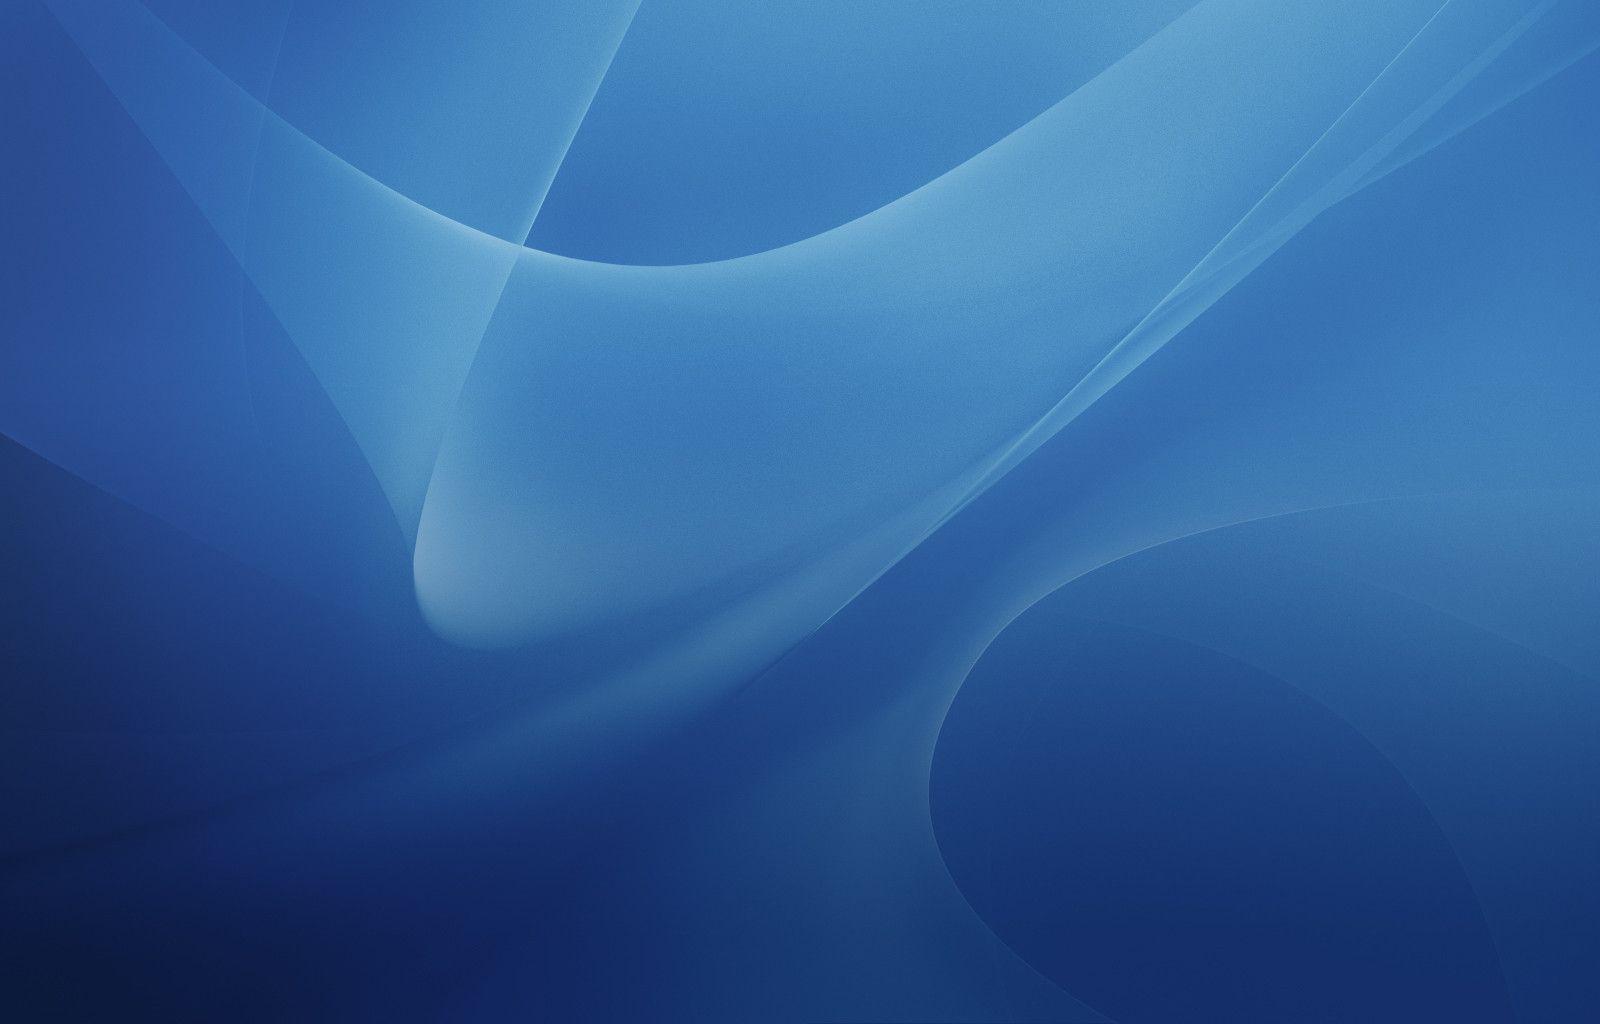 Apple Desktop Background Image